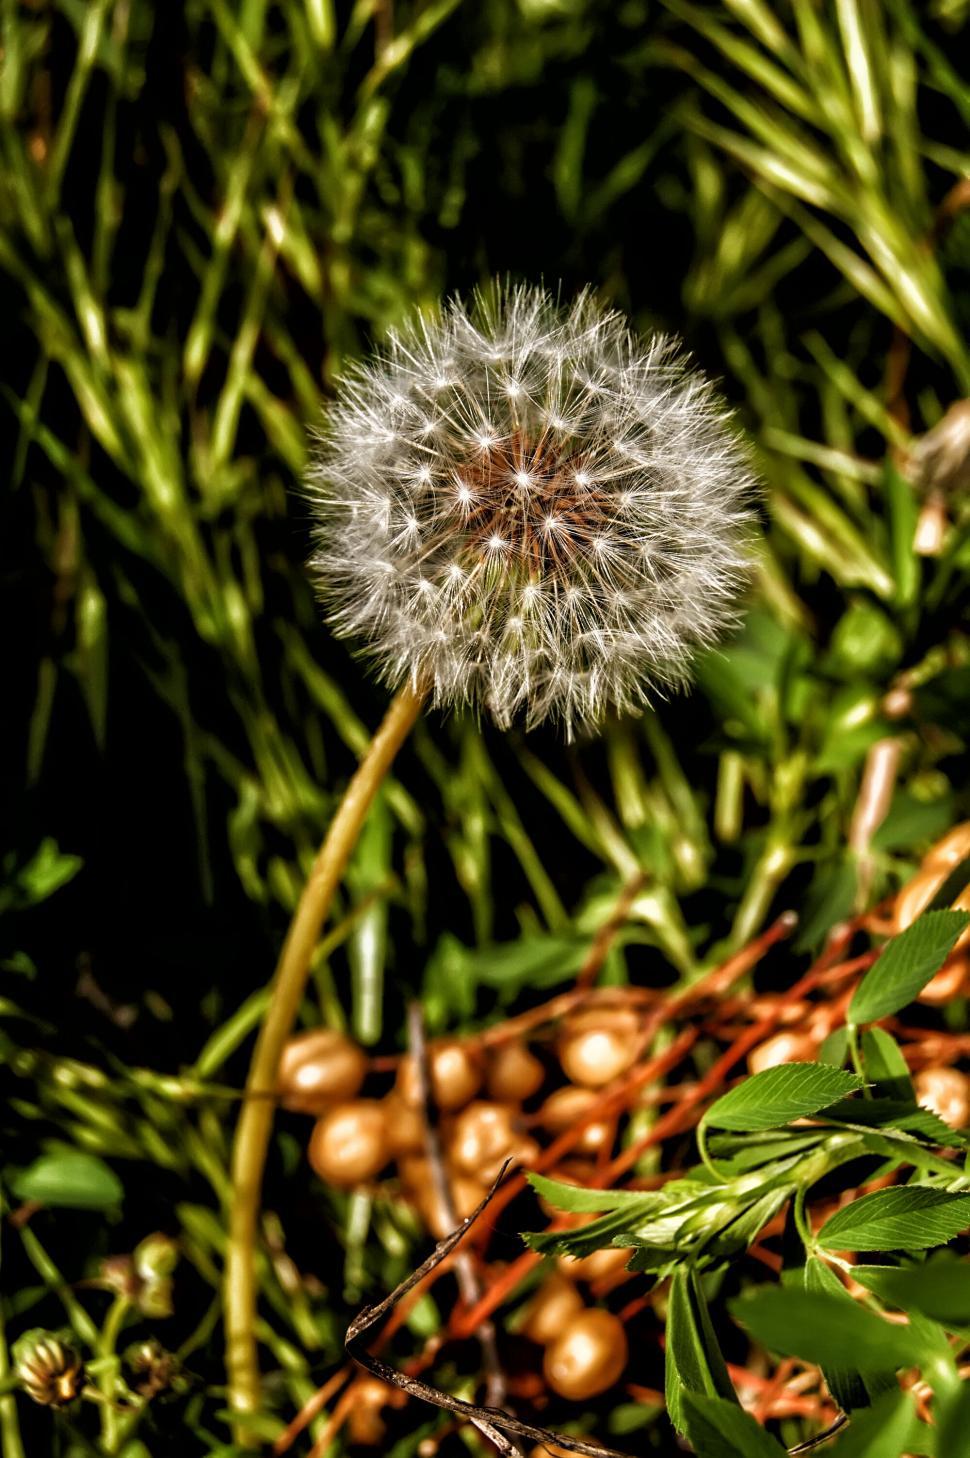 Free Image of Dandelion Puff Ball Amongst Greenery 